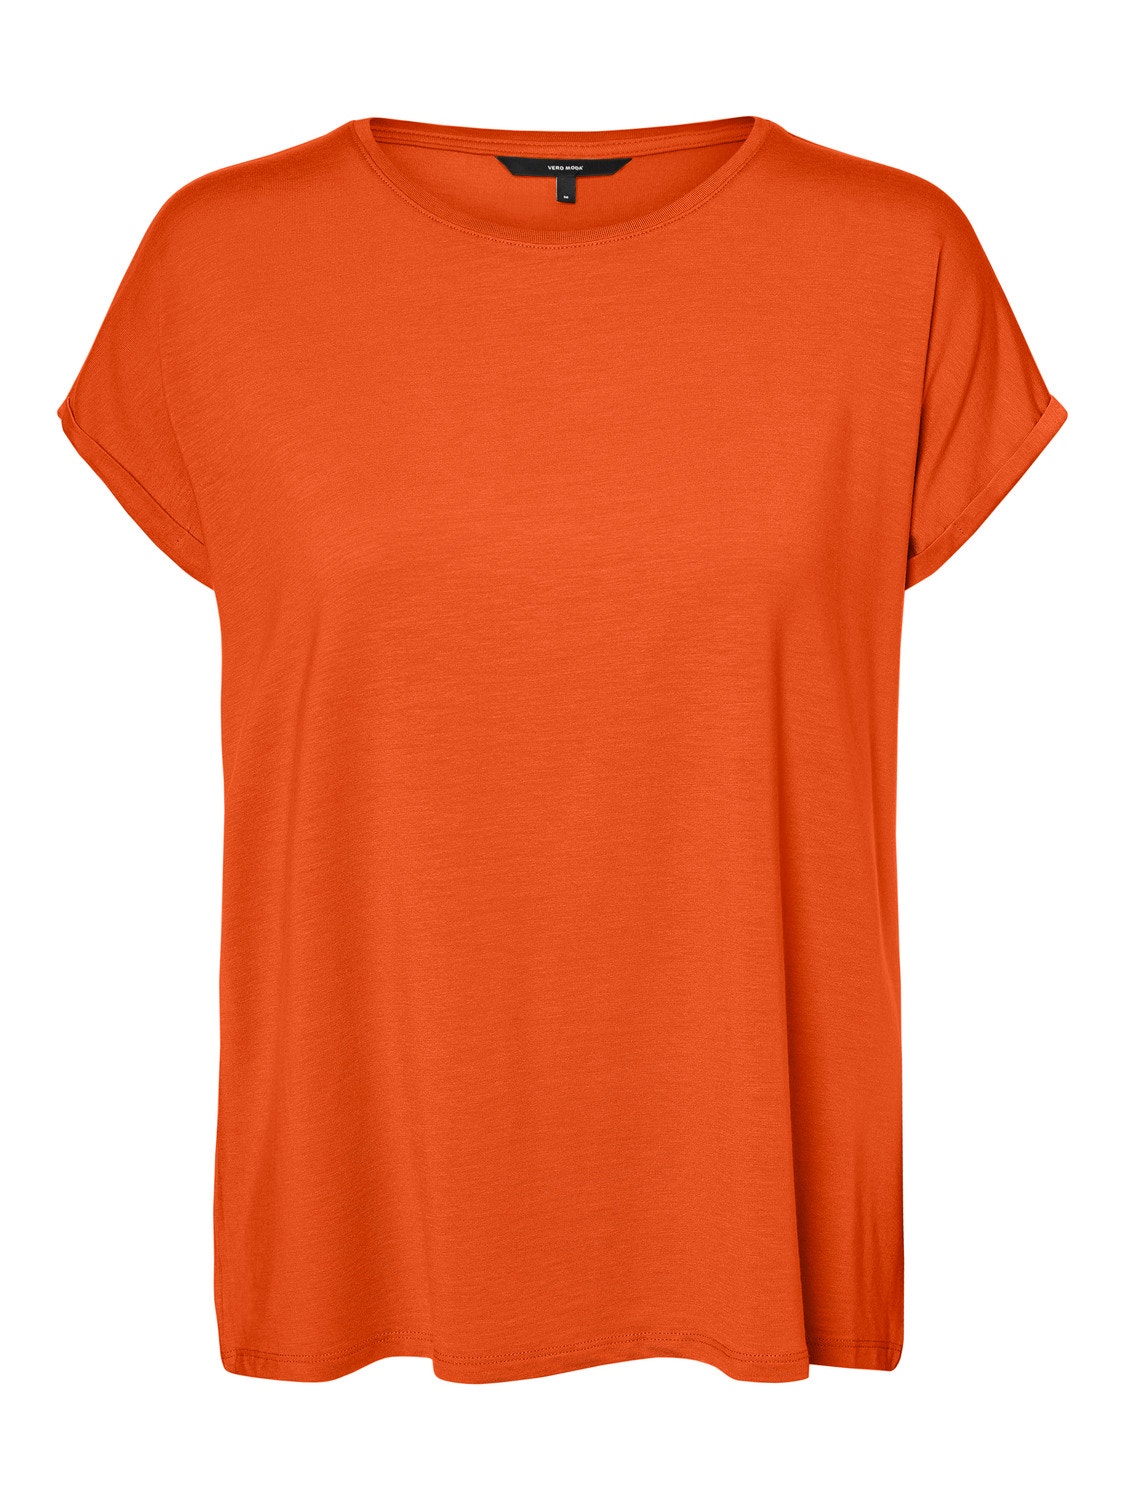 VMAVA T-Shirt | Vero Moda® Orange | Medium